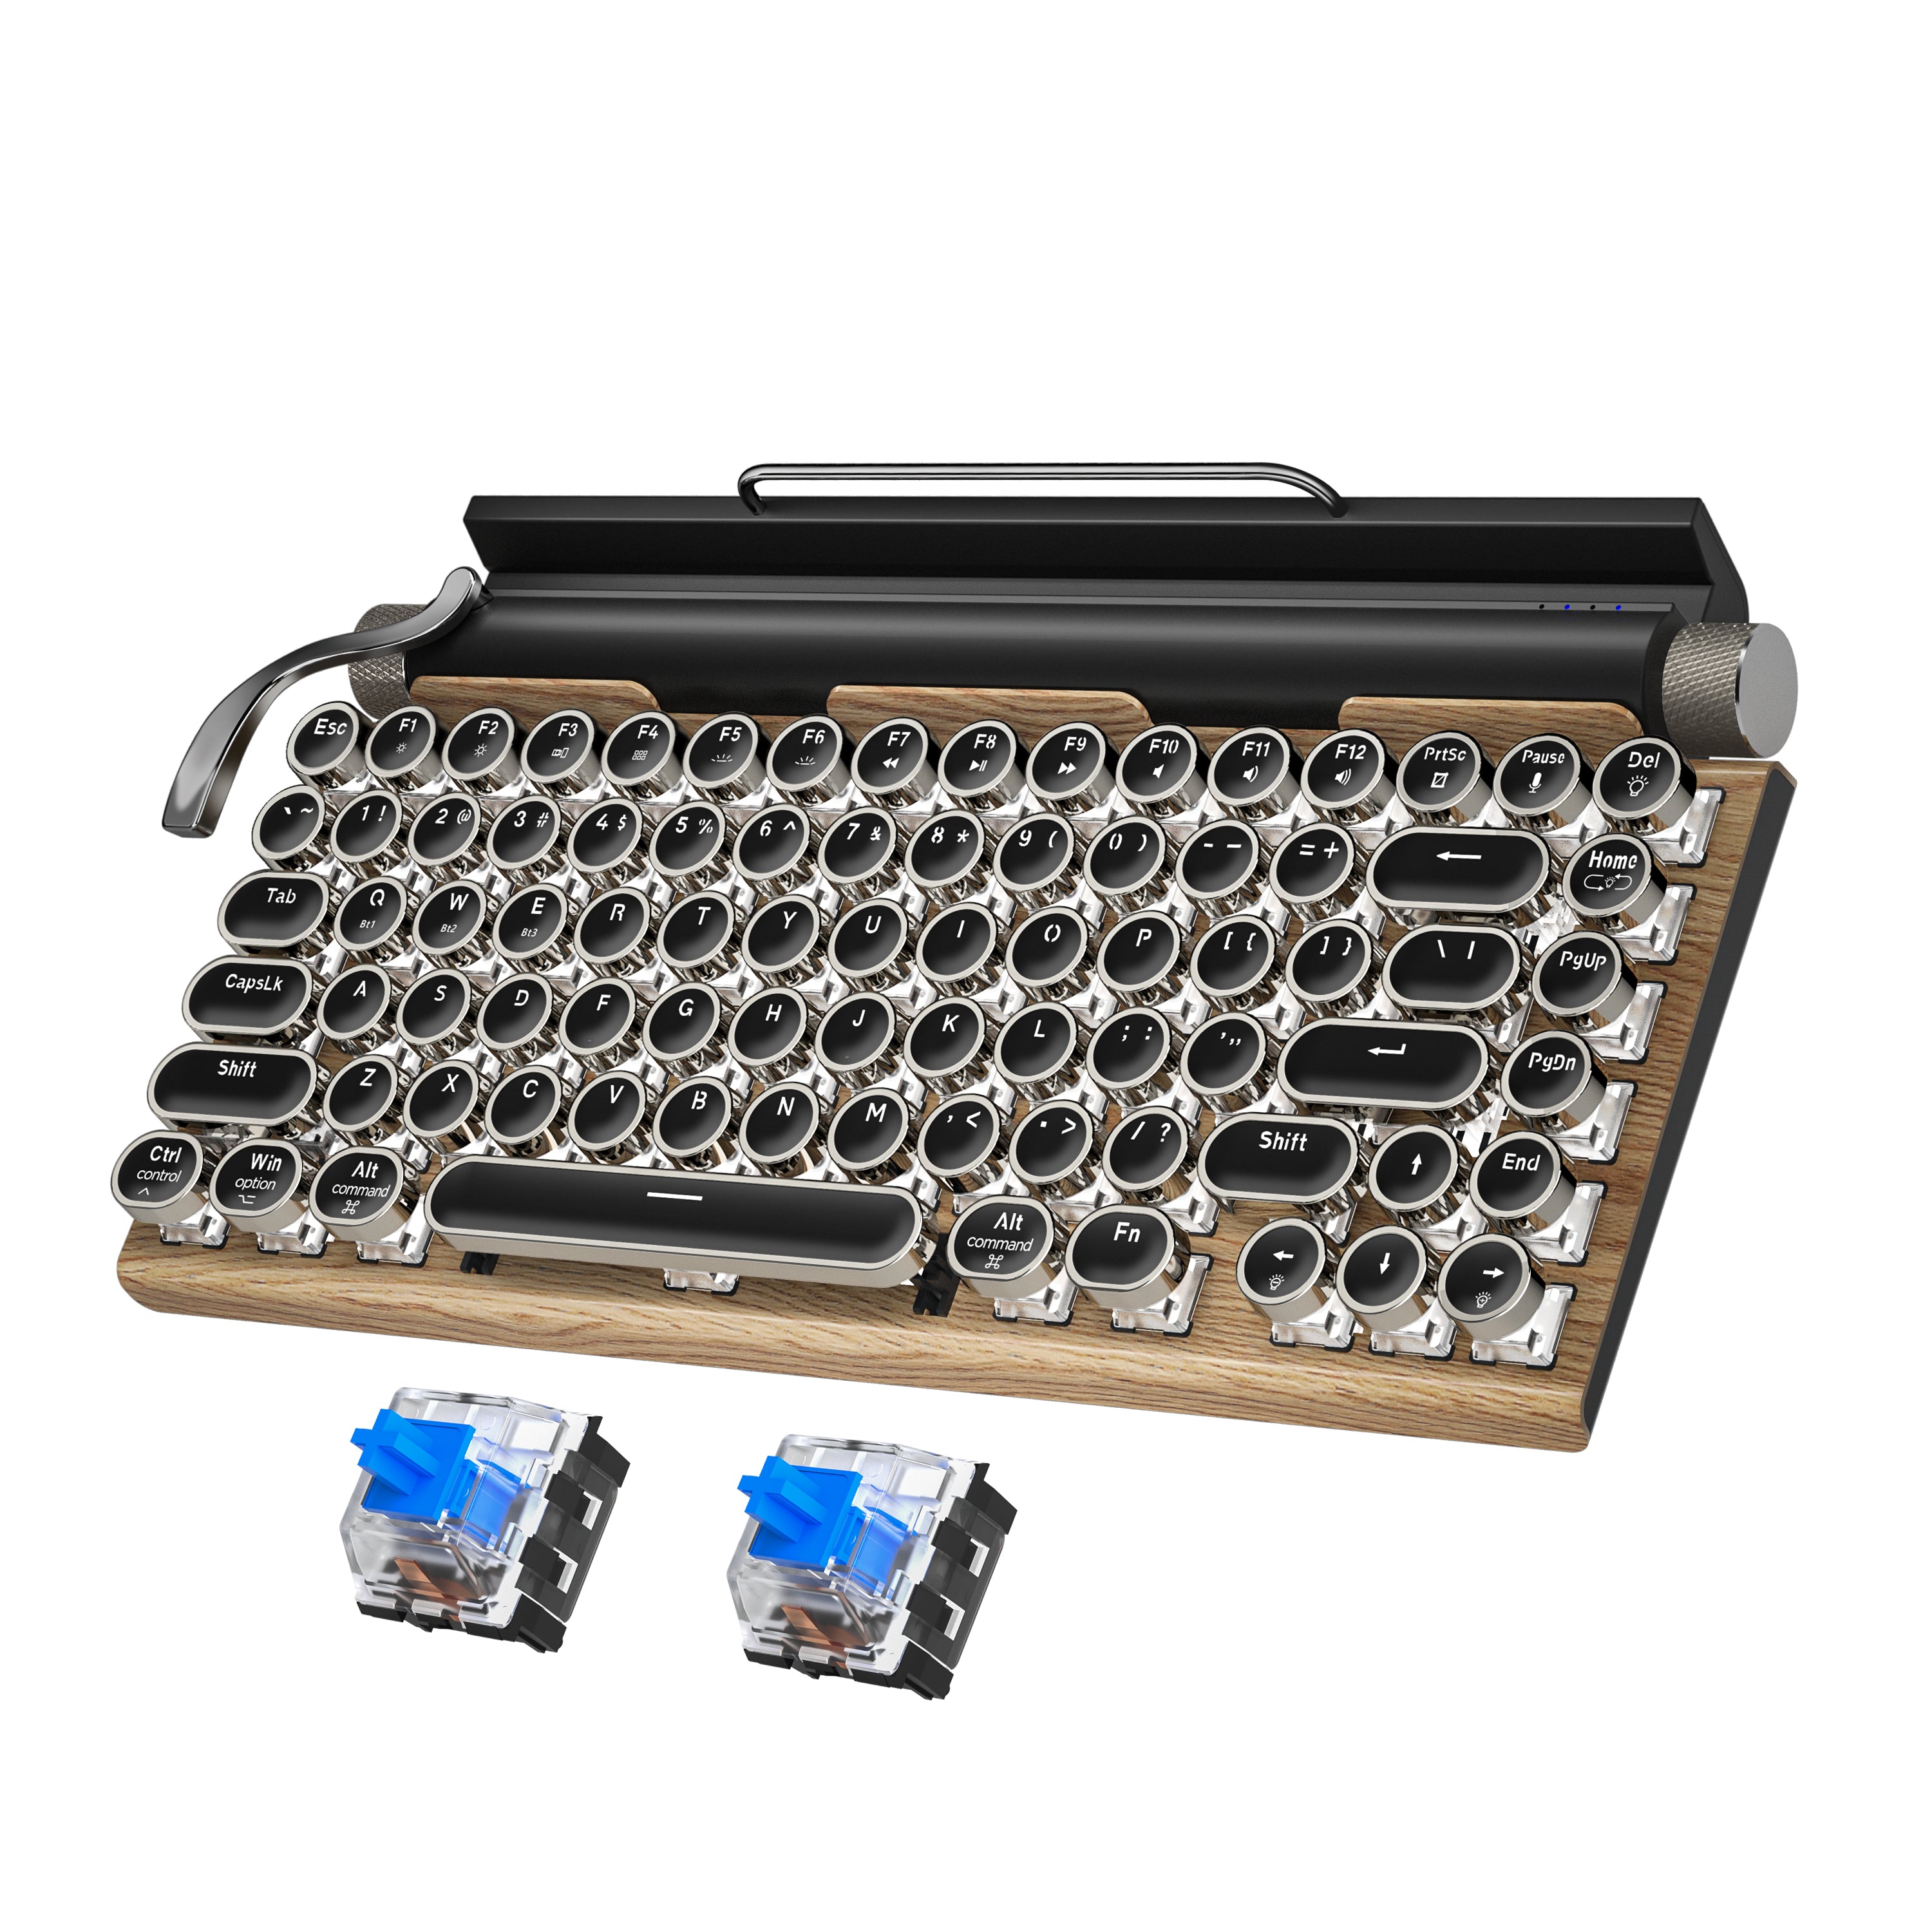 981 Retro Express Wireless, Mechanical Gaming Vintage Typewriter Keyboard